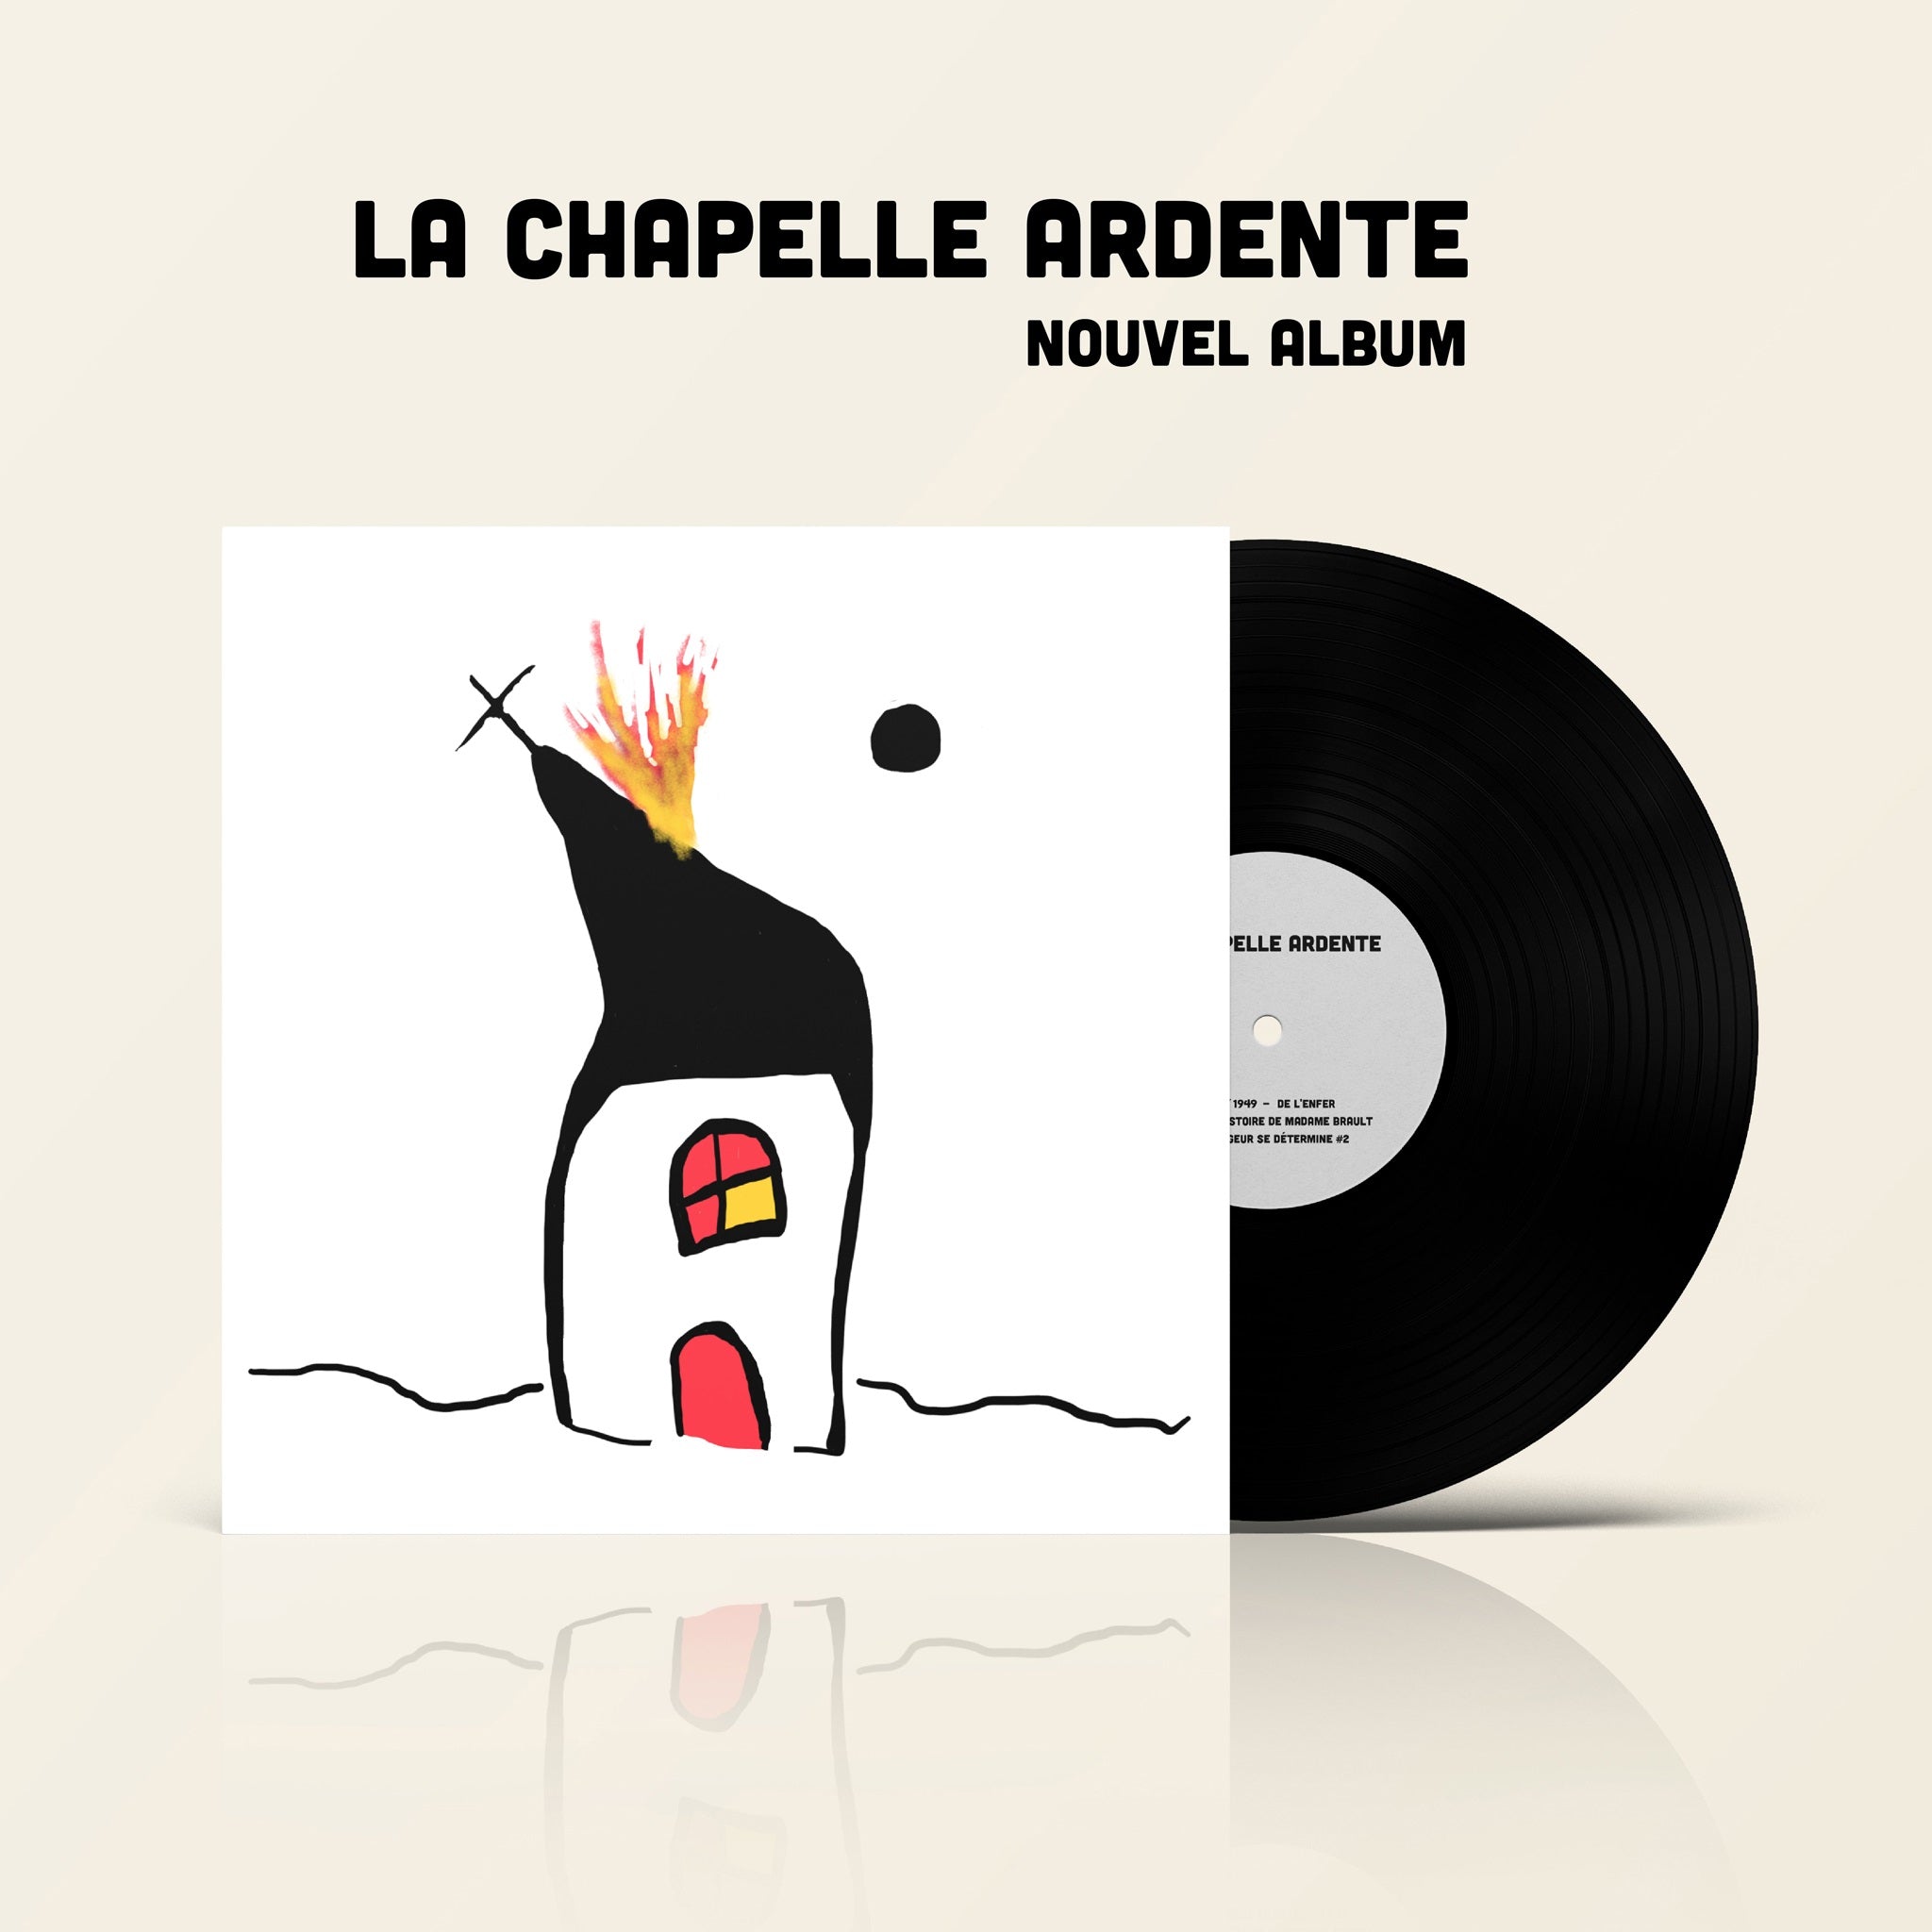 VINYLE - Michel Faubert et Bernard Falaise - La chapelle ardente - TRILP7436